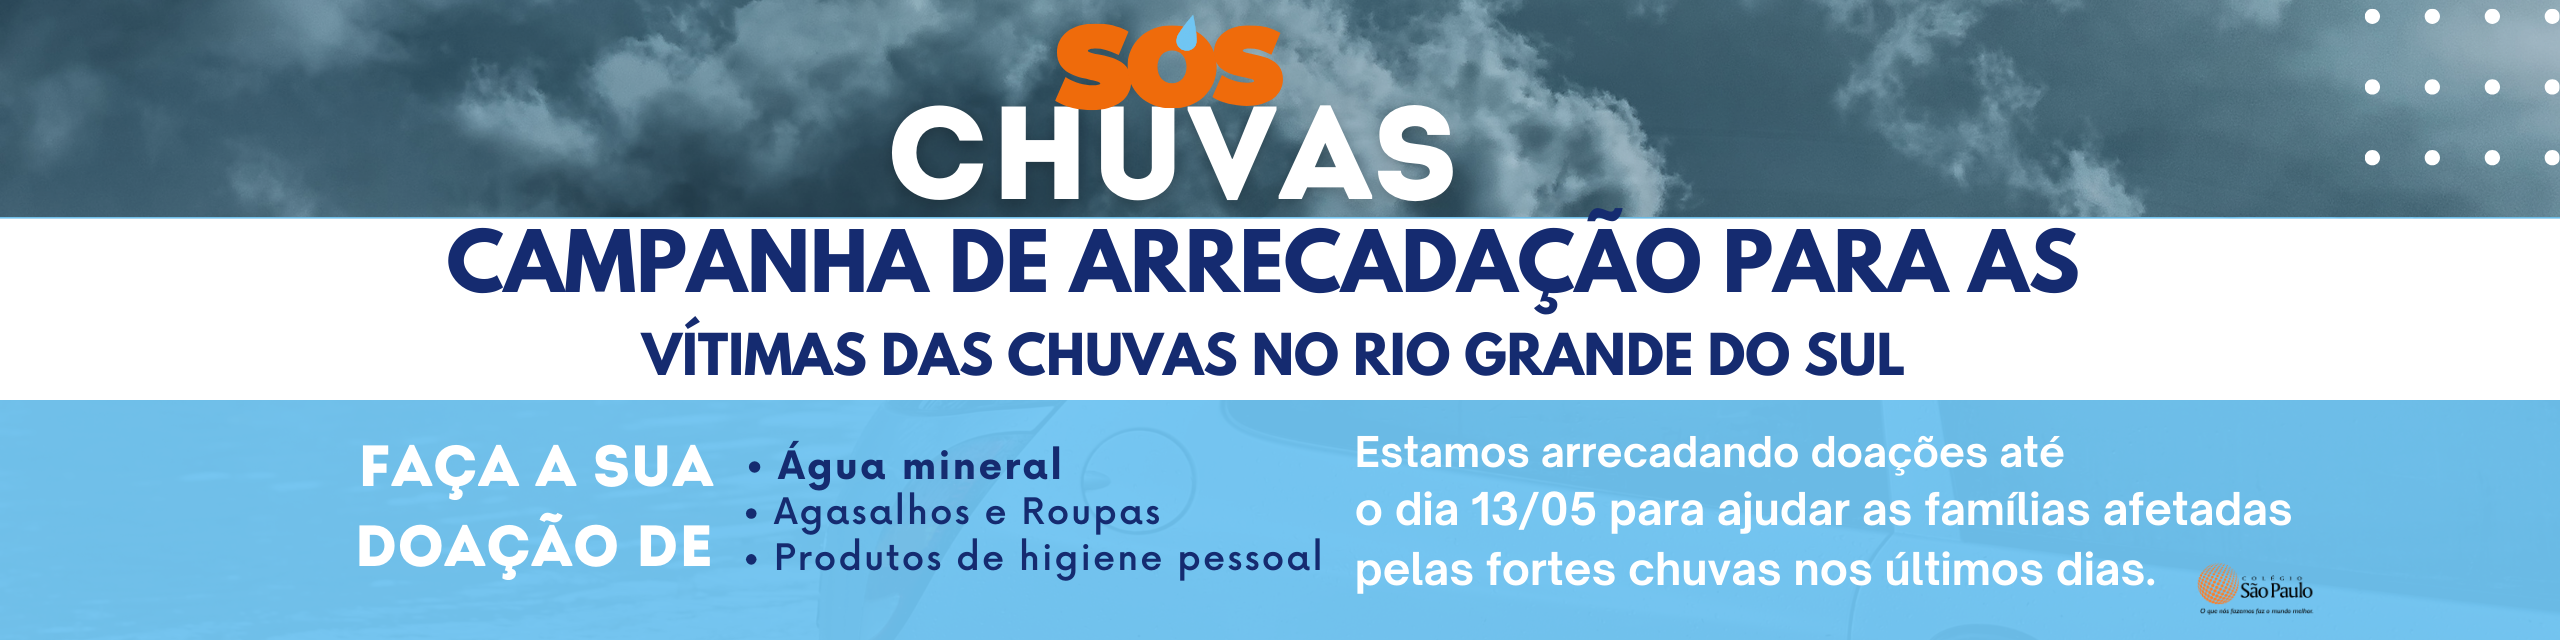 SOS CHUVAS  Post para mobilização social, doações e pedidos de ajuda  Tema Azul escuro (2560 x 640 px)